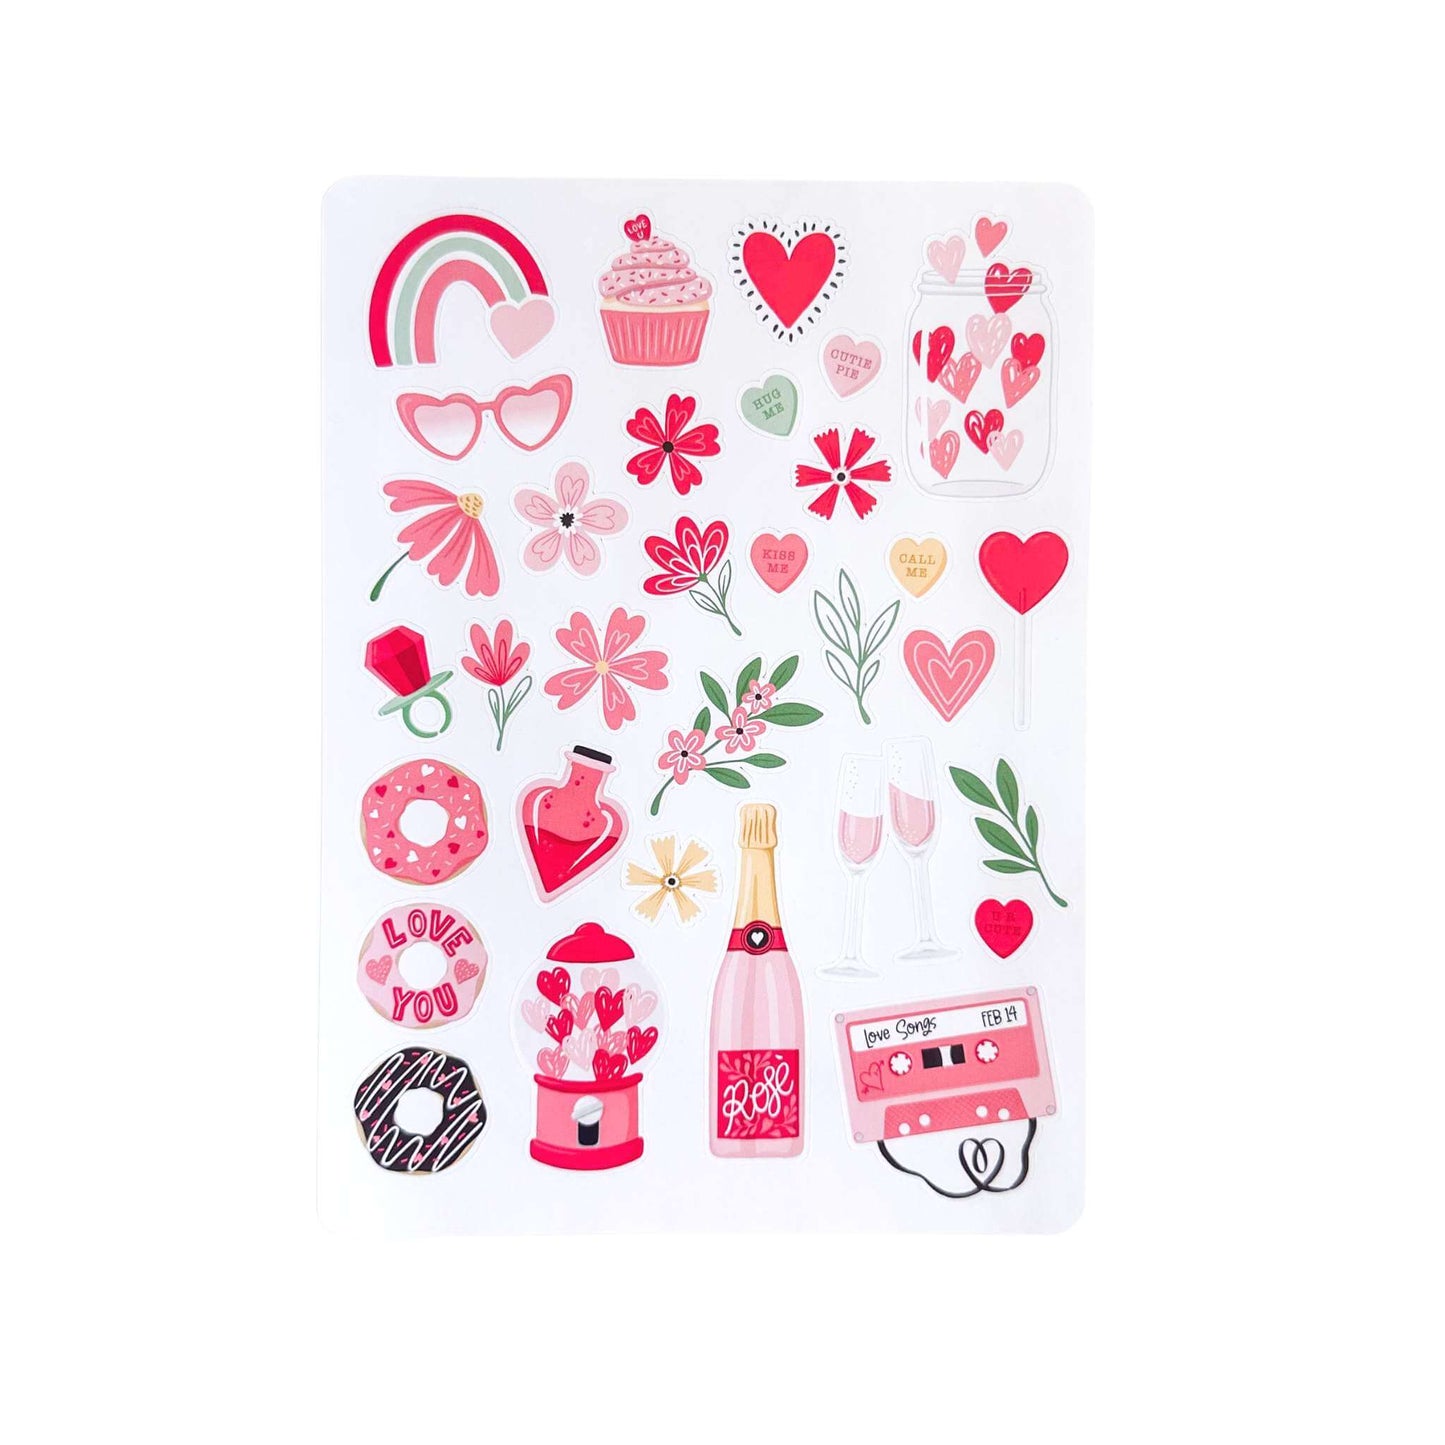 Get planning sticker sheets - Valentines